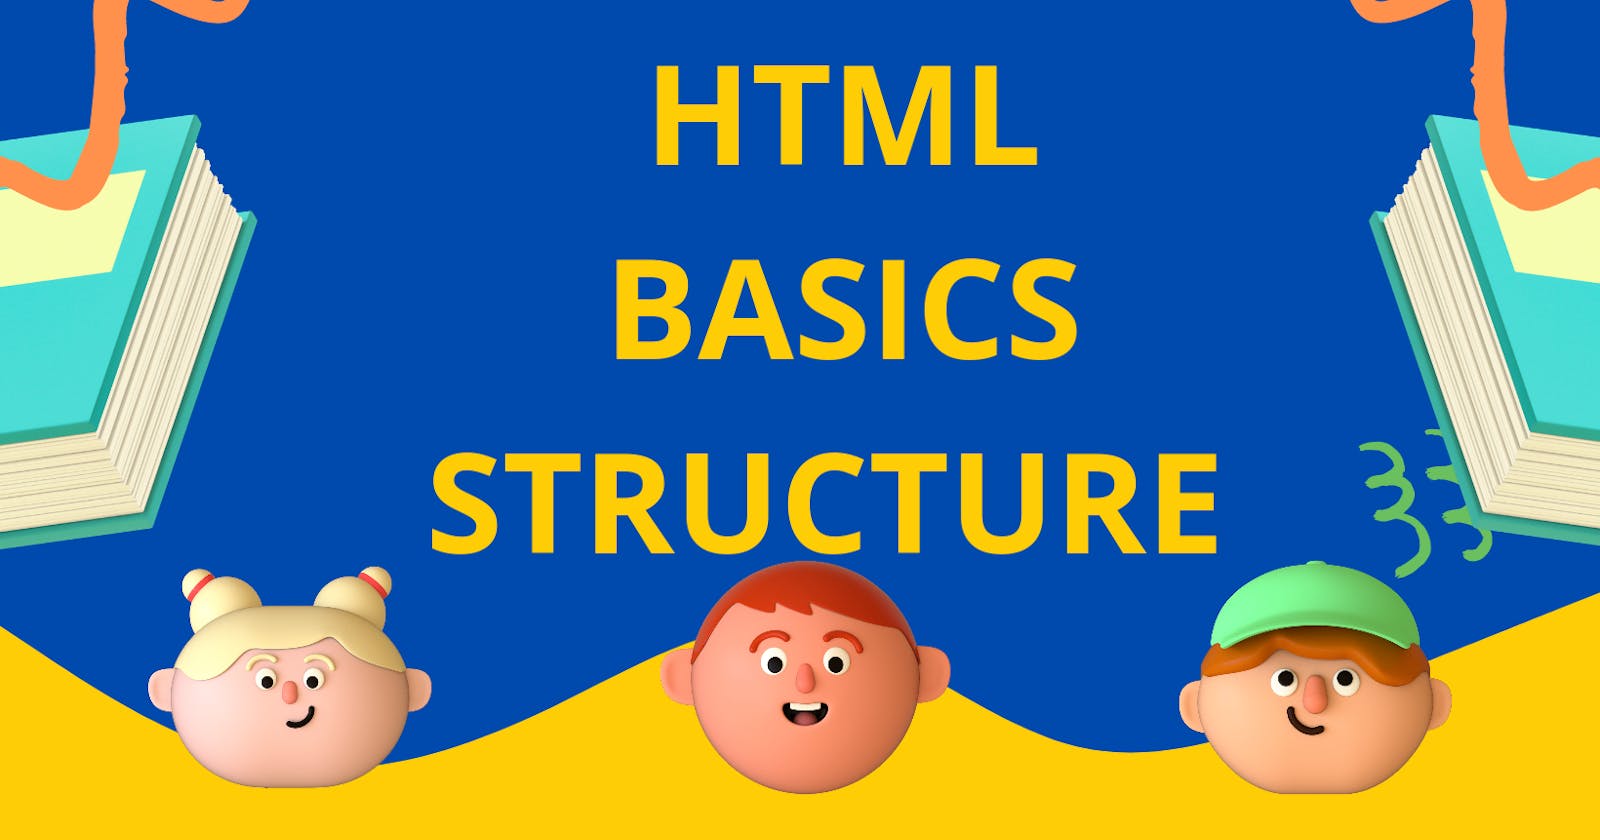 HTML basics structure